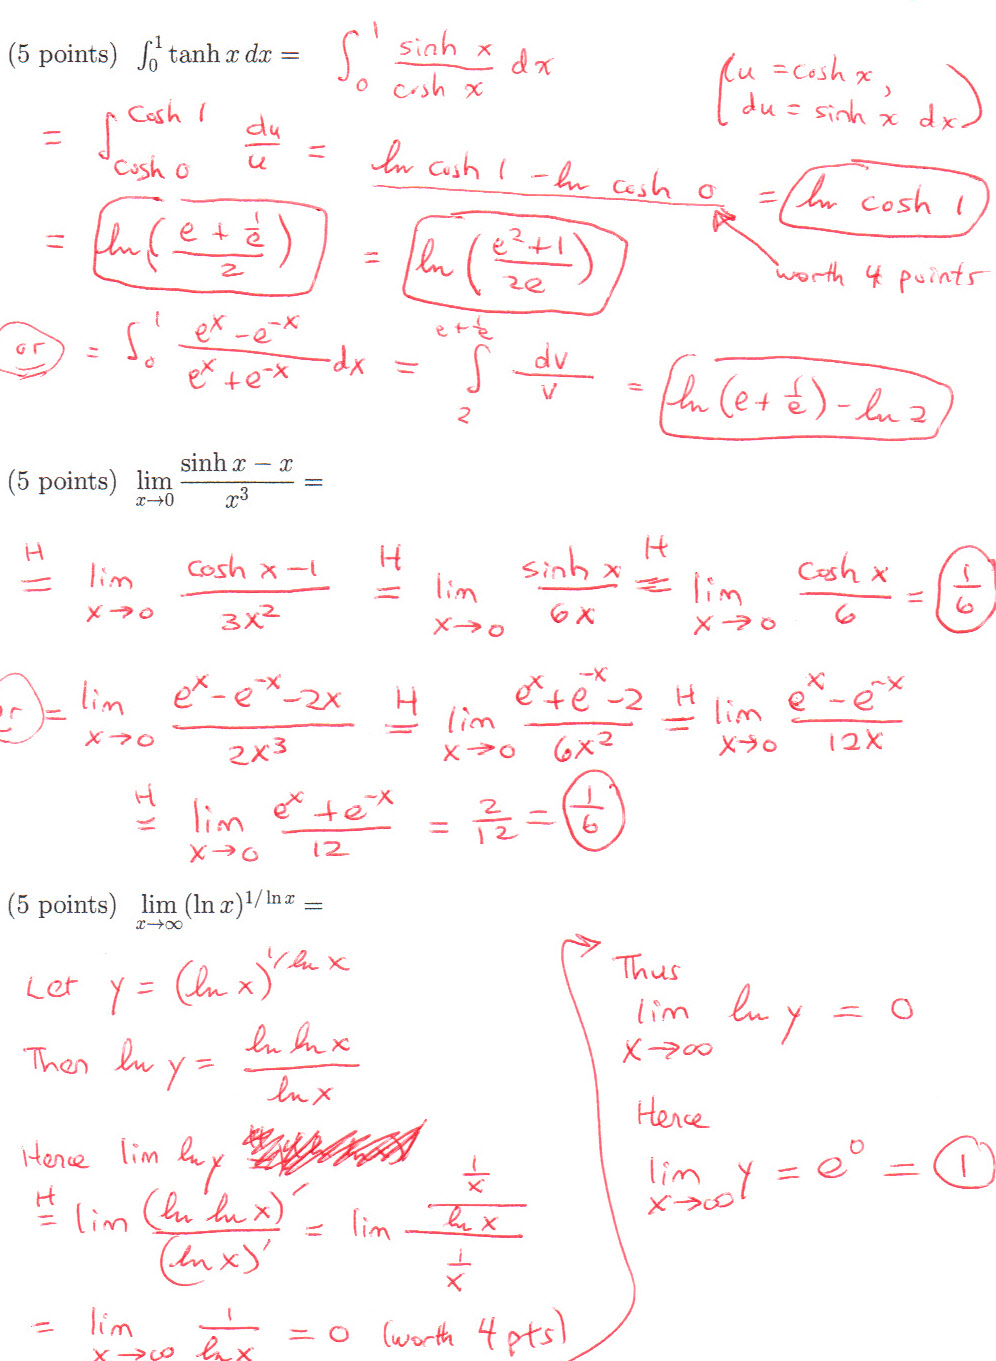 mit calculus practice problems